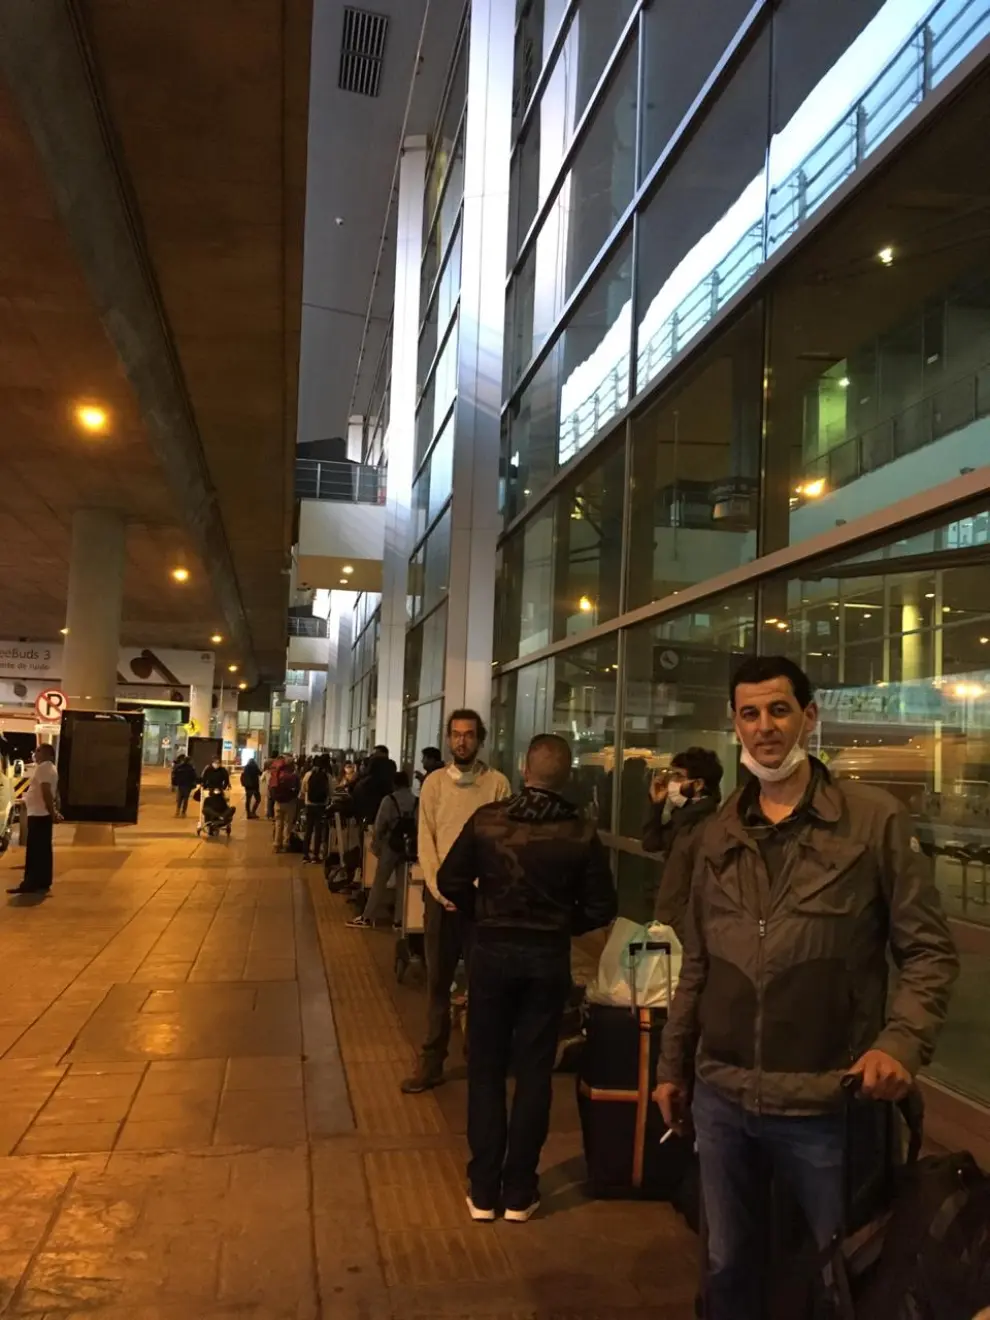 El avión en el que viajaba ha aterrizado esta madrugada en Madrid-Barajas con centenares de repatriados. Lezcano inicia ahora 14 días de aislamiento para prevenir contagios.